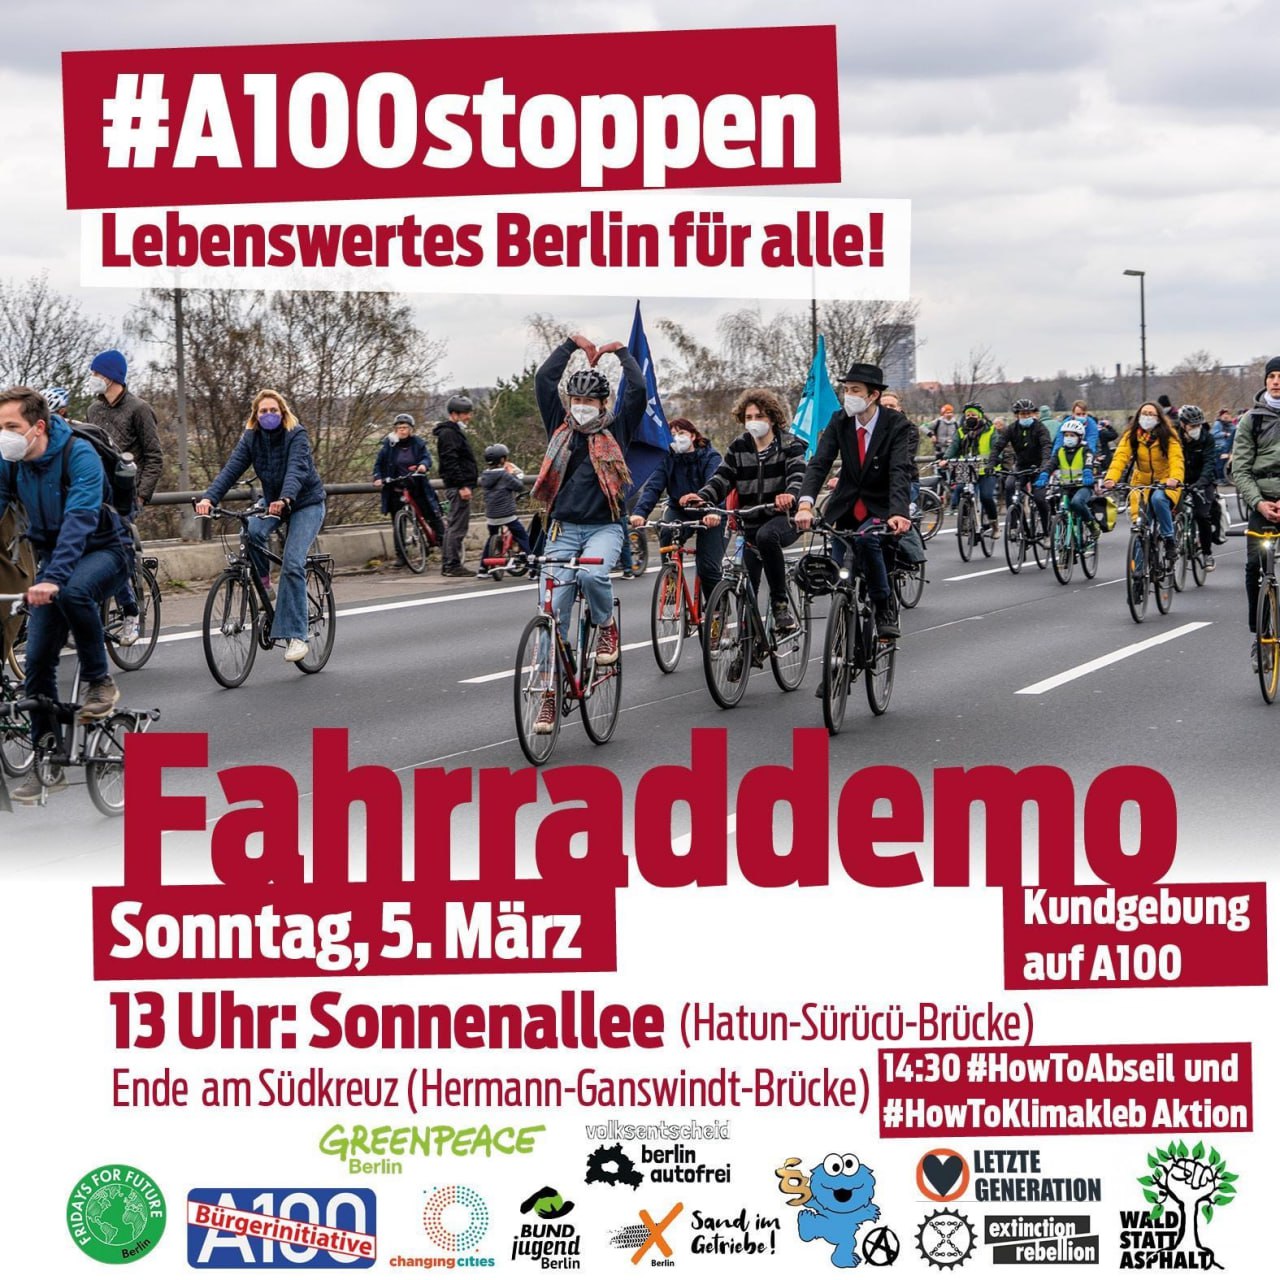 Fahrraddemo gegen den Ausbau der Autobahn A100 in Berlin